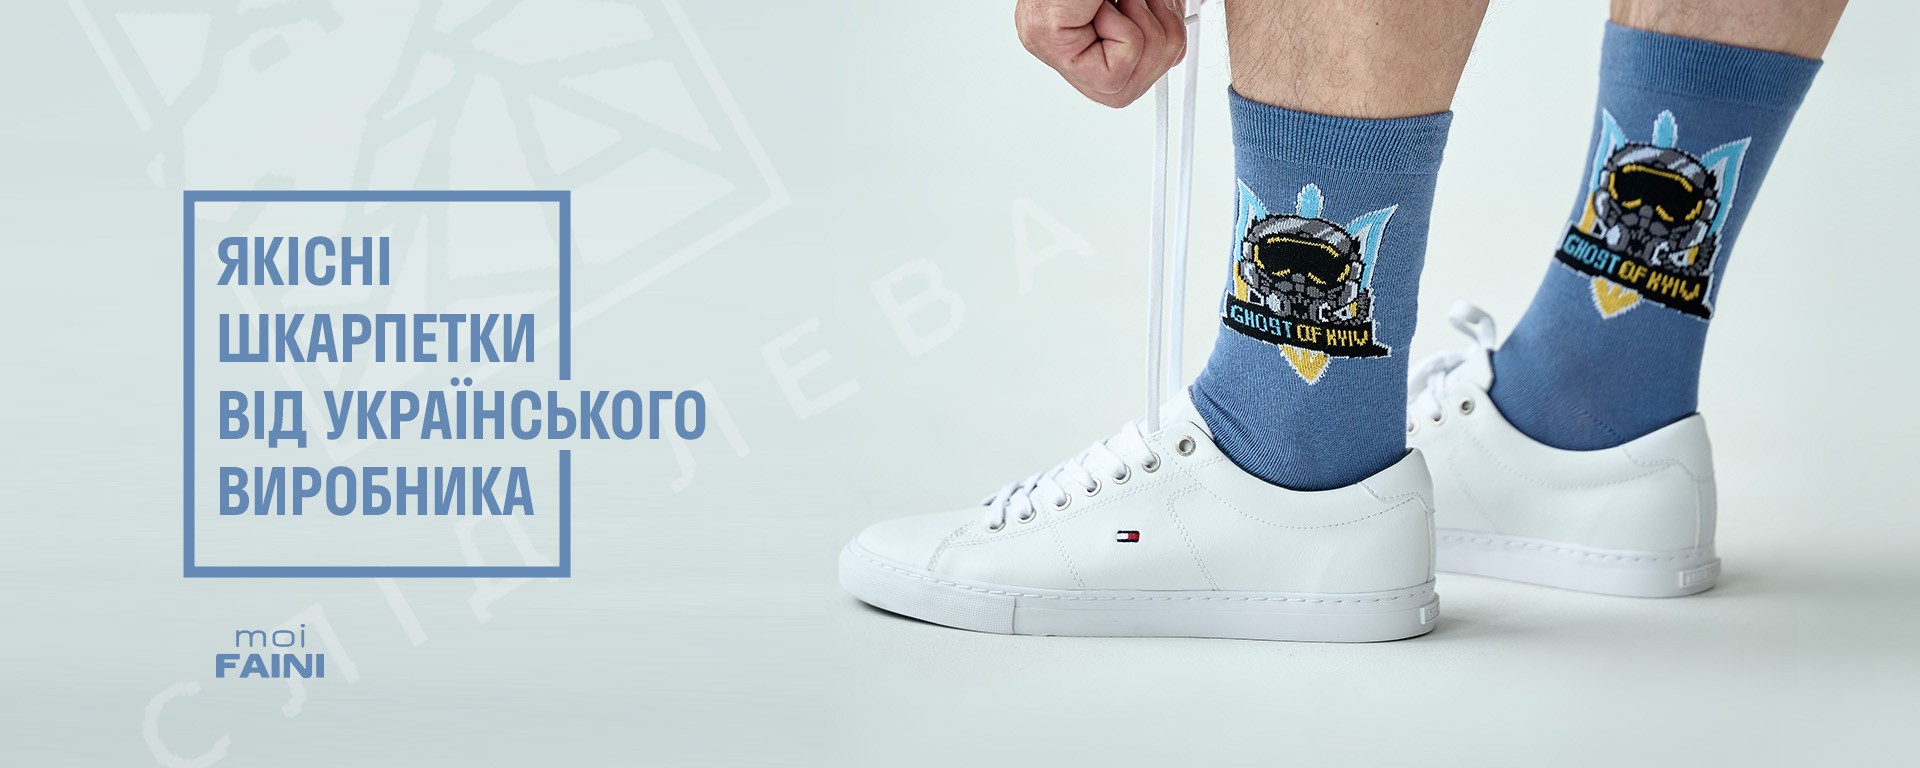 Якісні шкарпетки від українського виробника